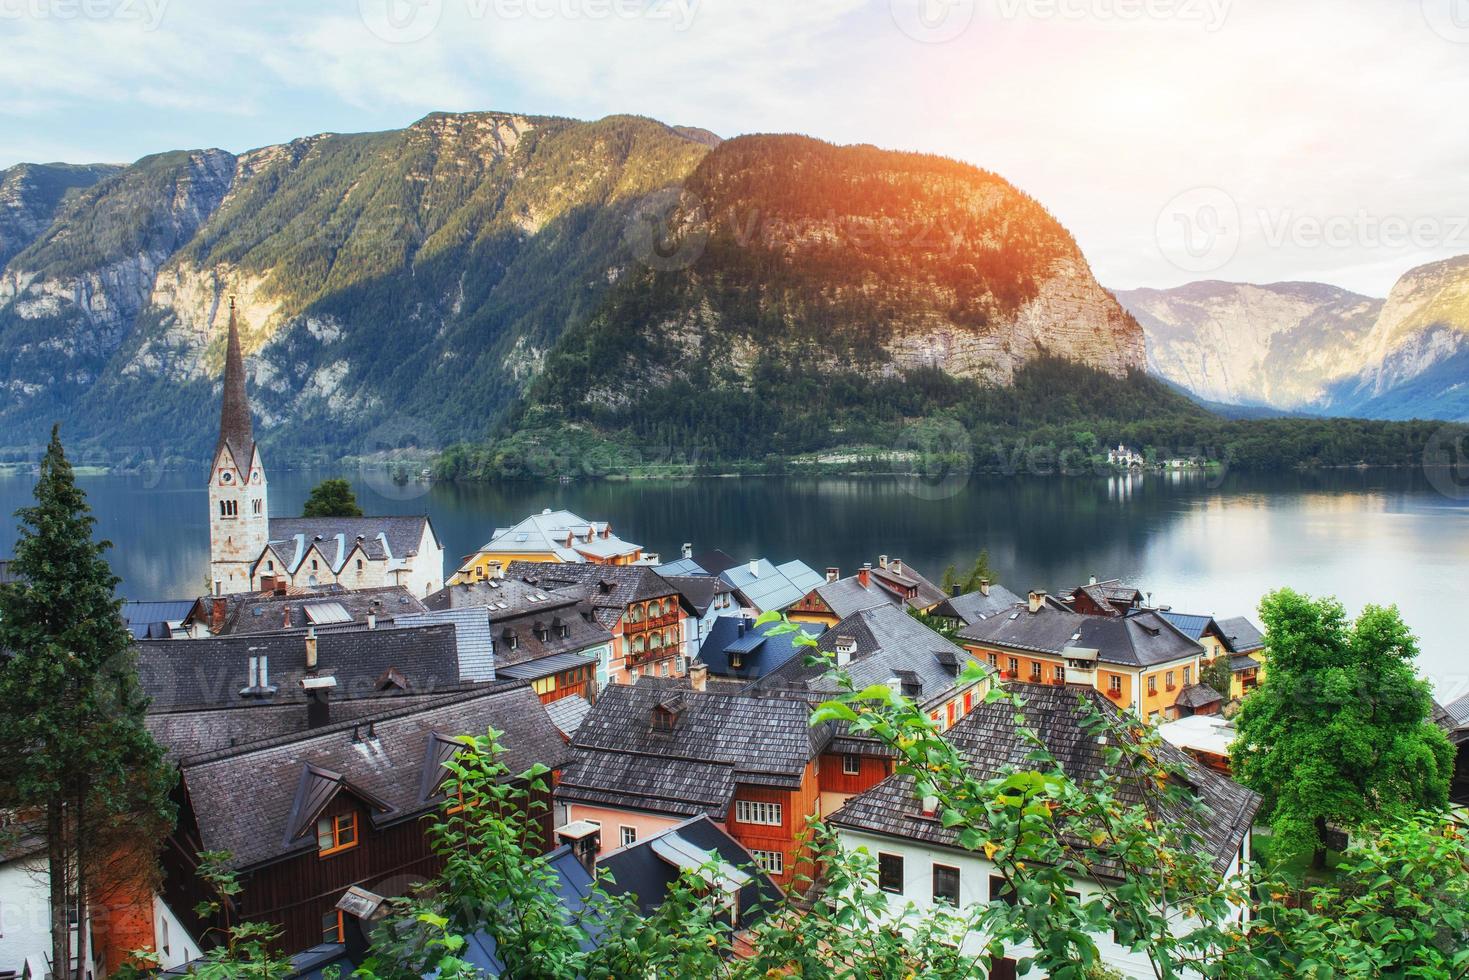 Malerischer Panoramablick auf das berühmte Bergdorf in den österreichischen Alpen. hallstatt. Österreich foto